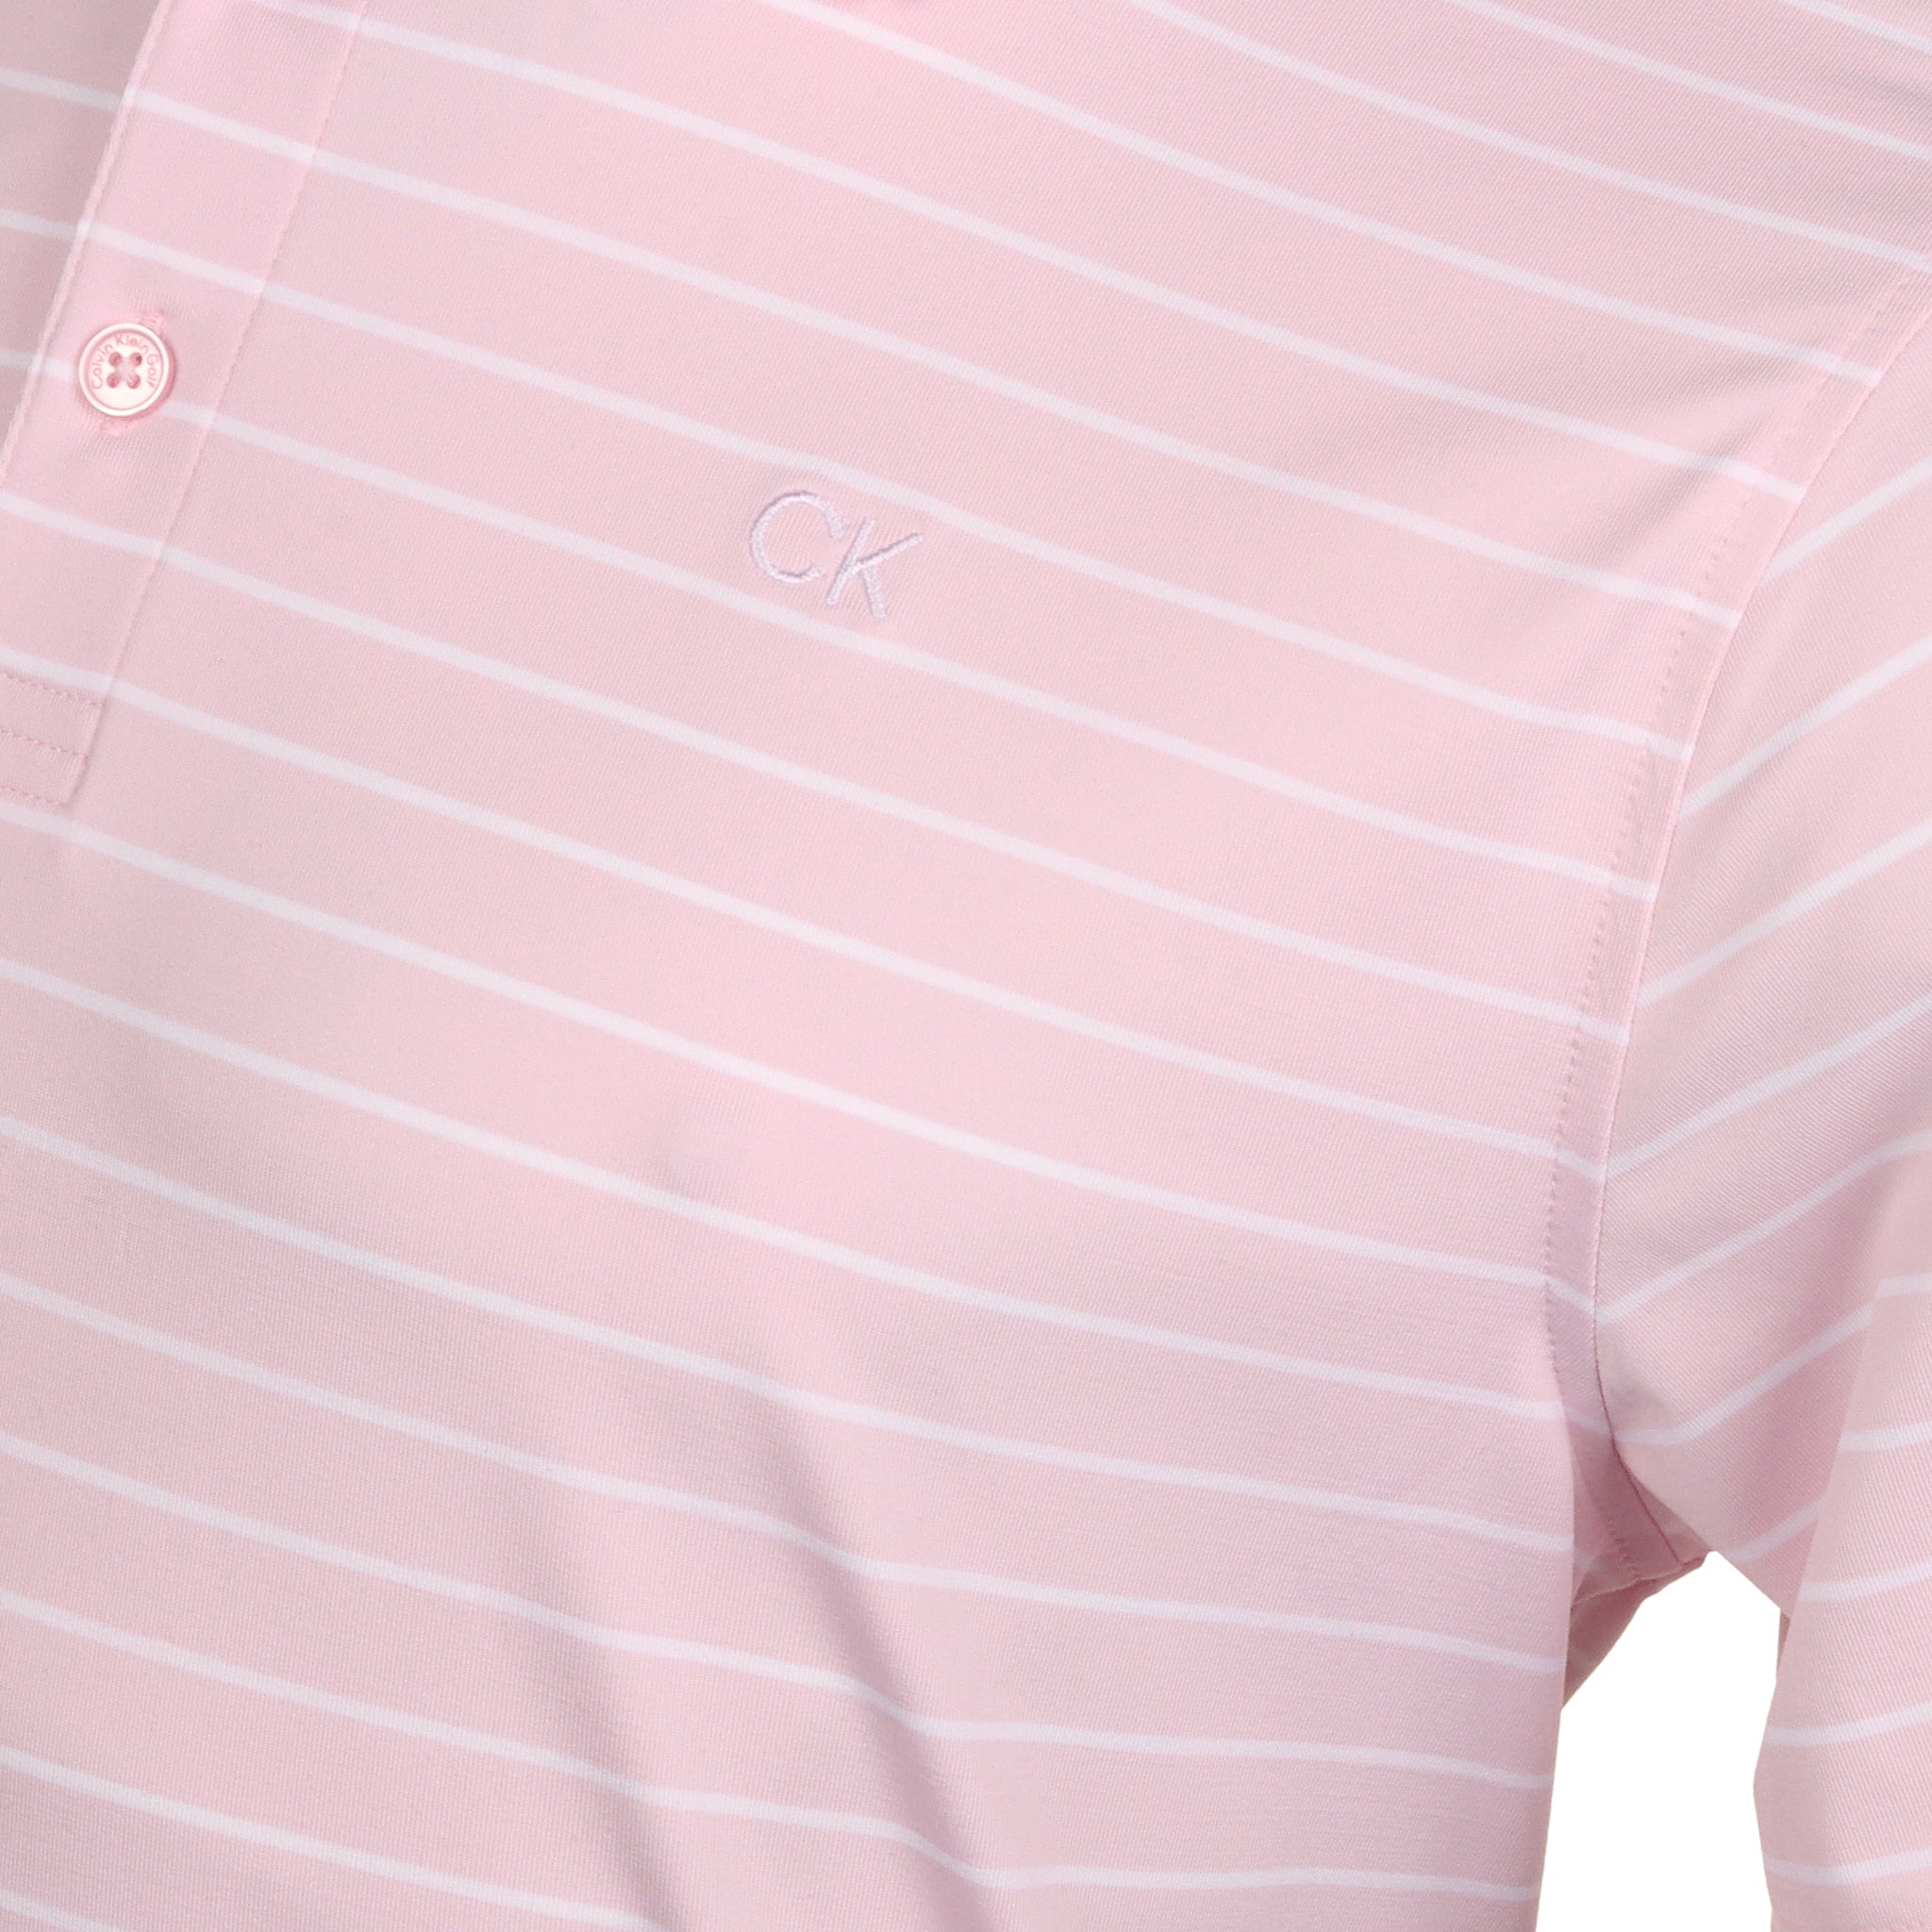 calvin-klein-golf-silverstone-shirt-ckms24887-pink-white